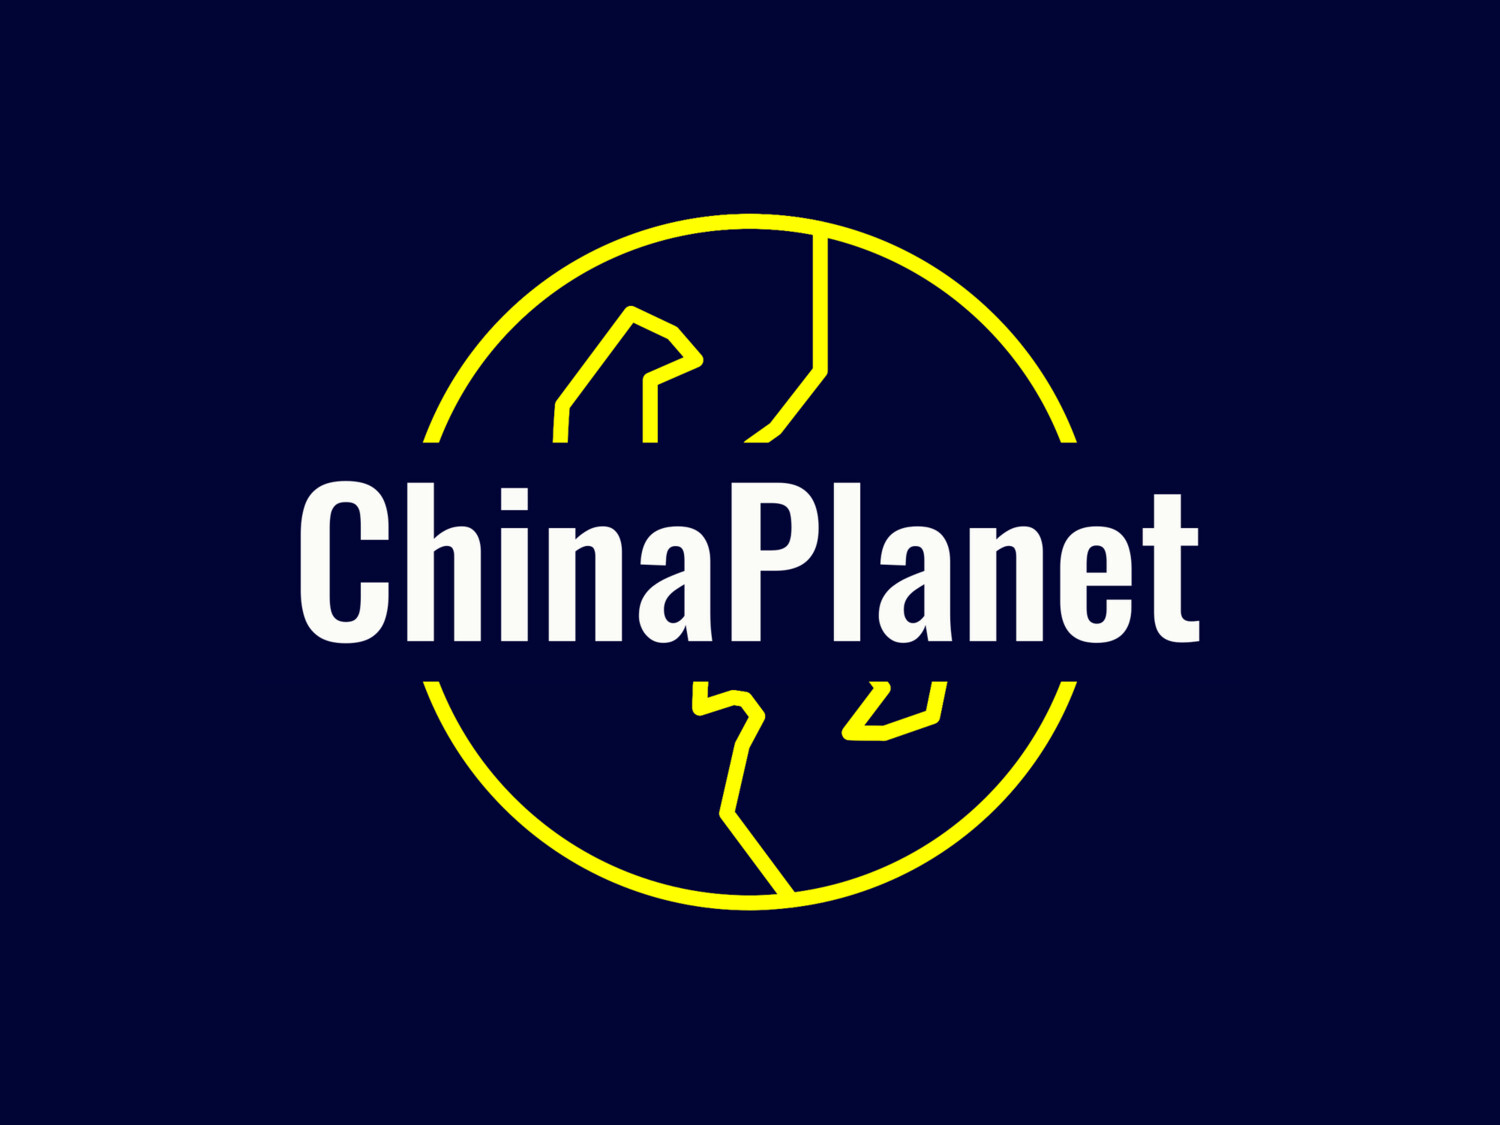 ChinaPlanet.com